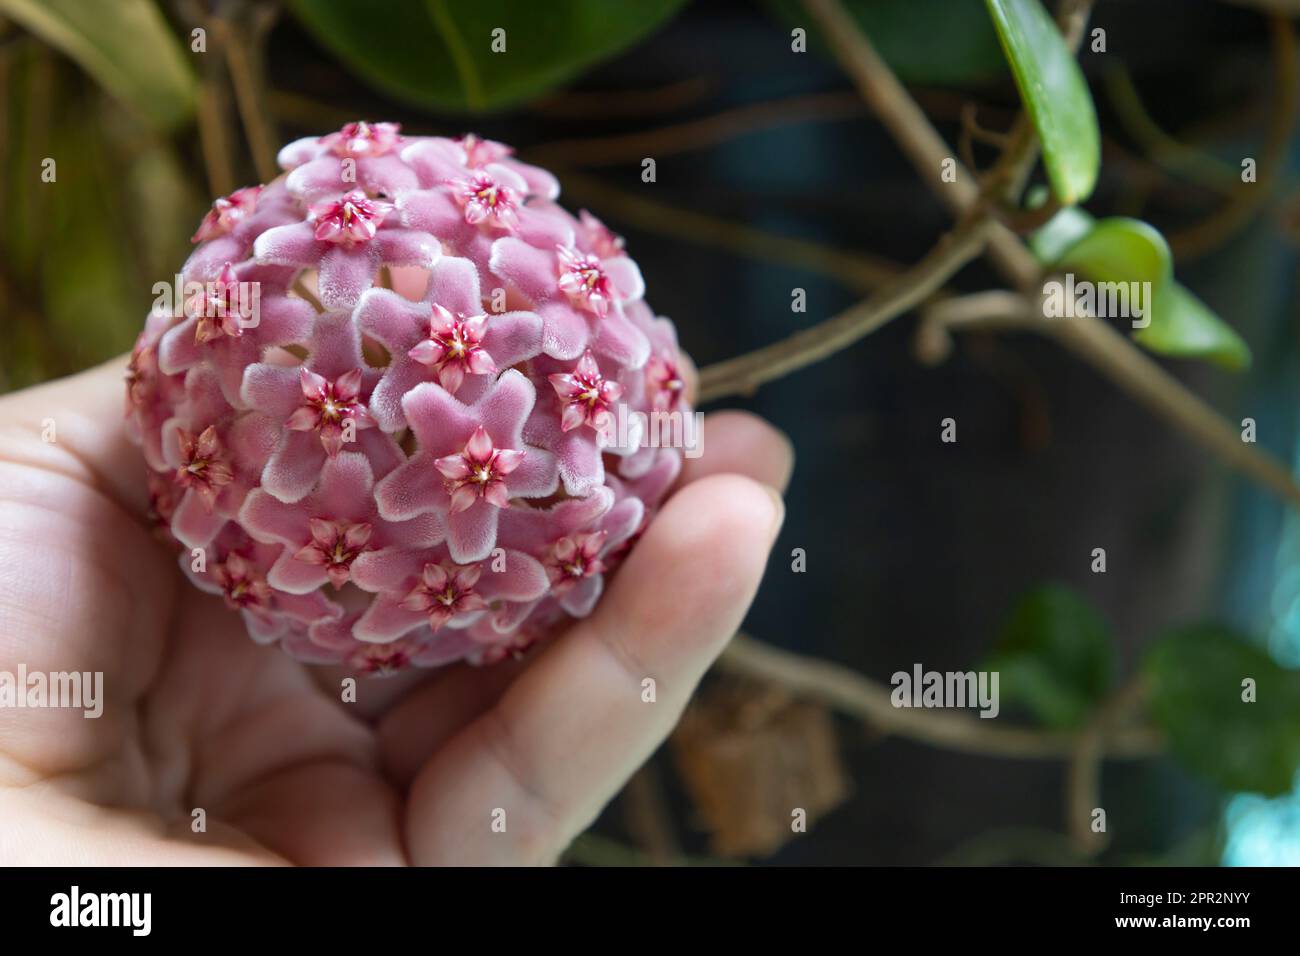 Fleurs de carnosa de Hoya. Fleur de porcelaine ou plante de cire. boule de fleurs roses en fleurs sur la main Banque D'Images